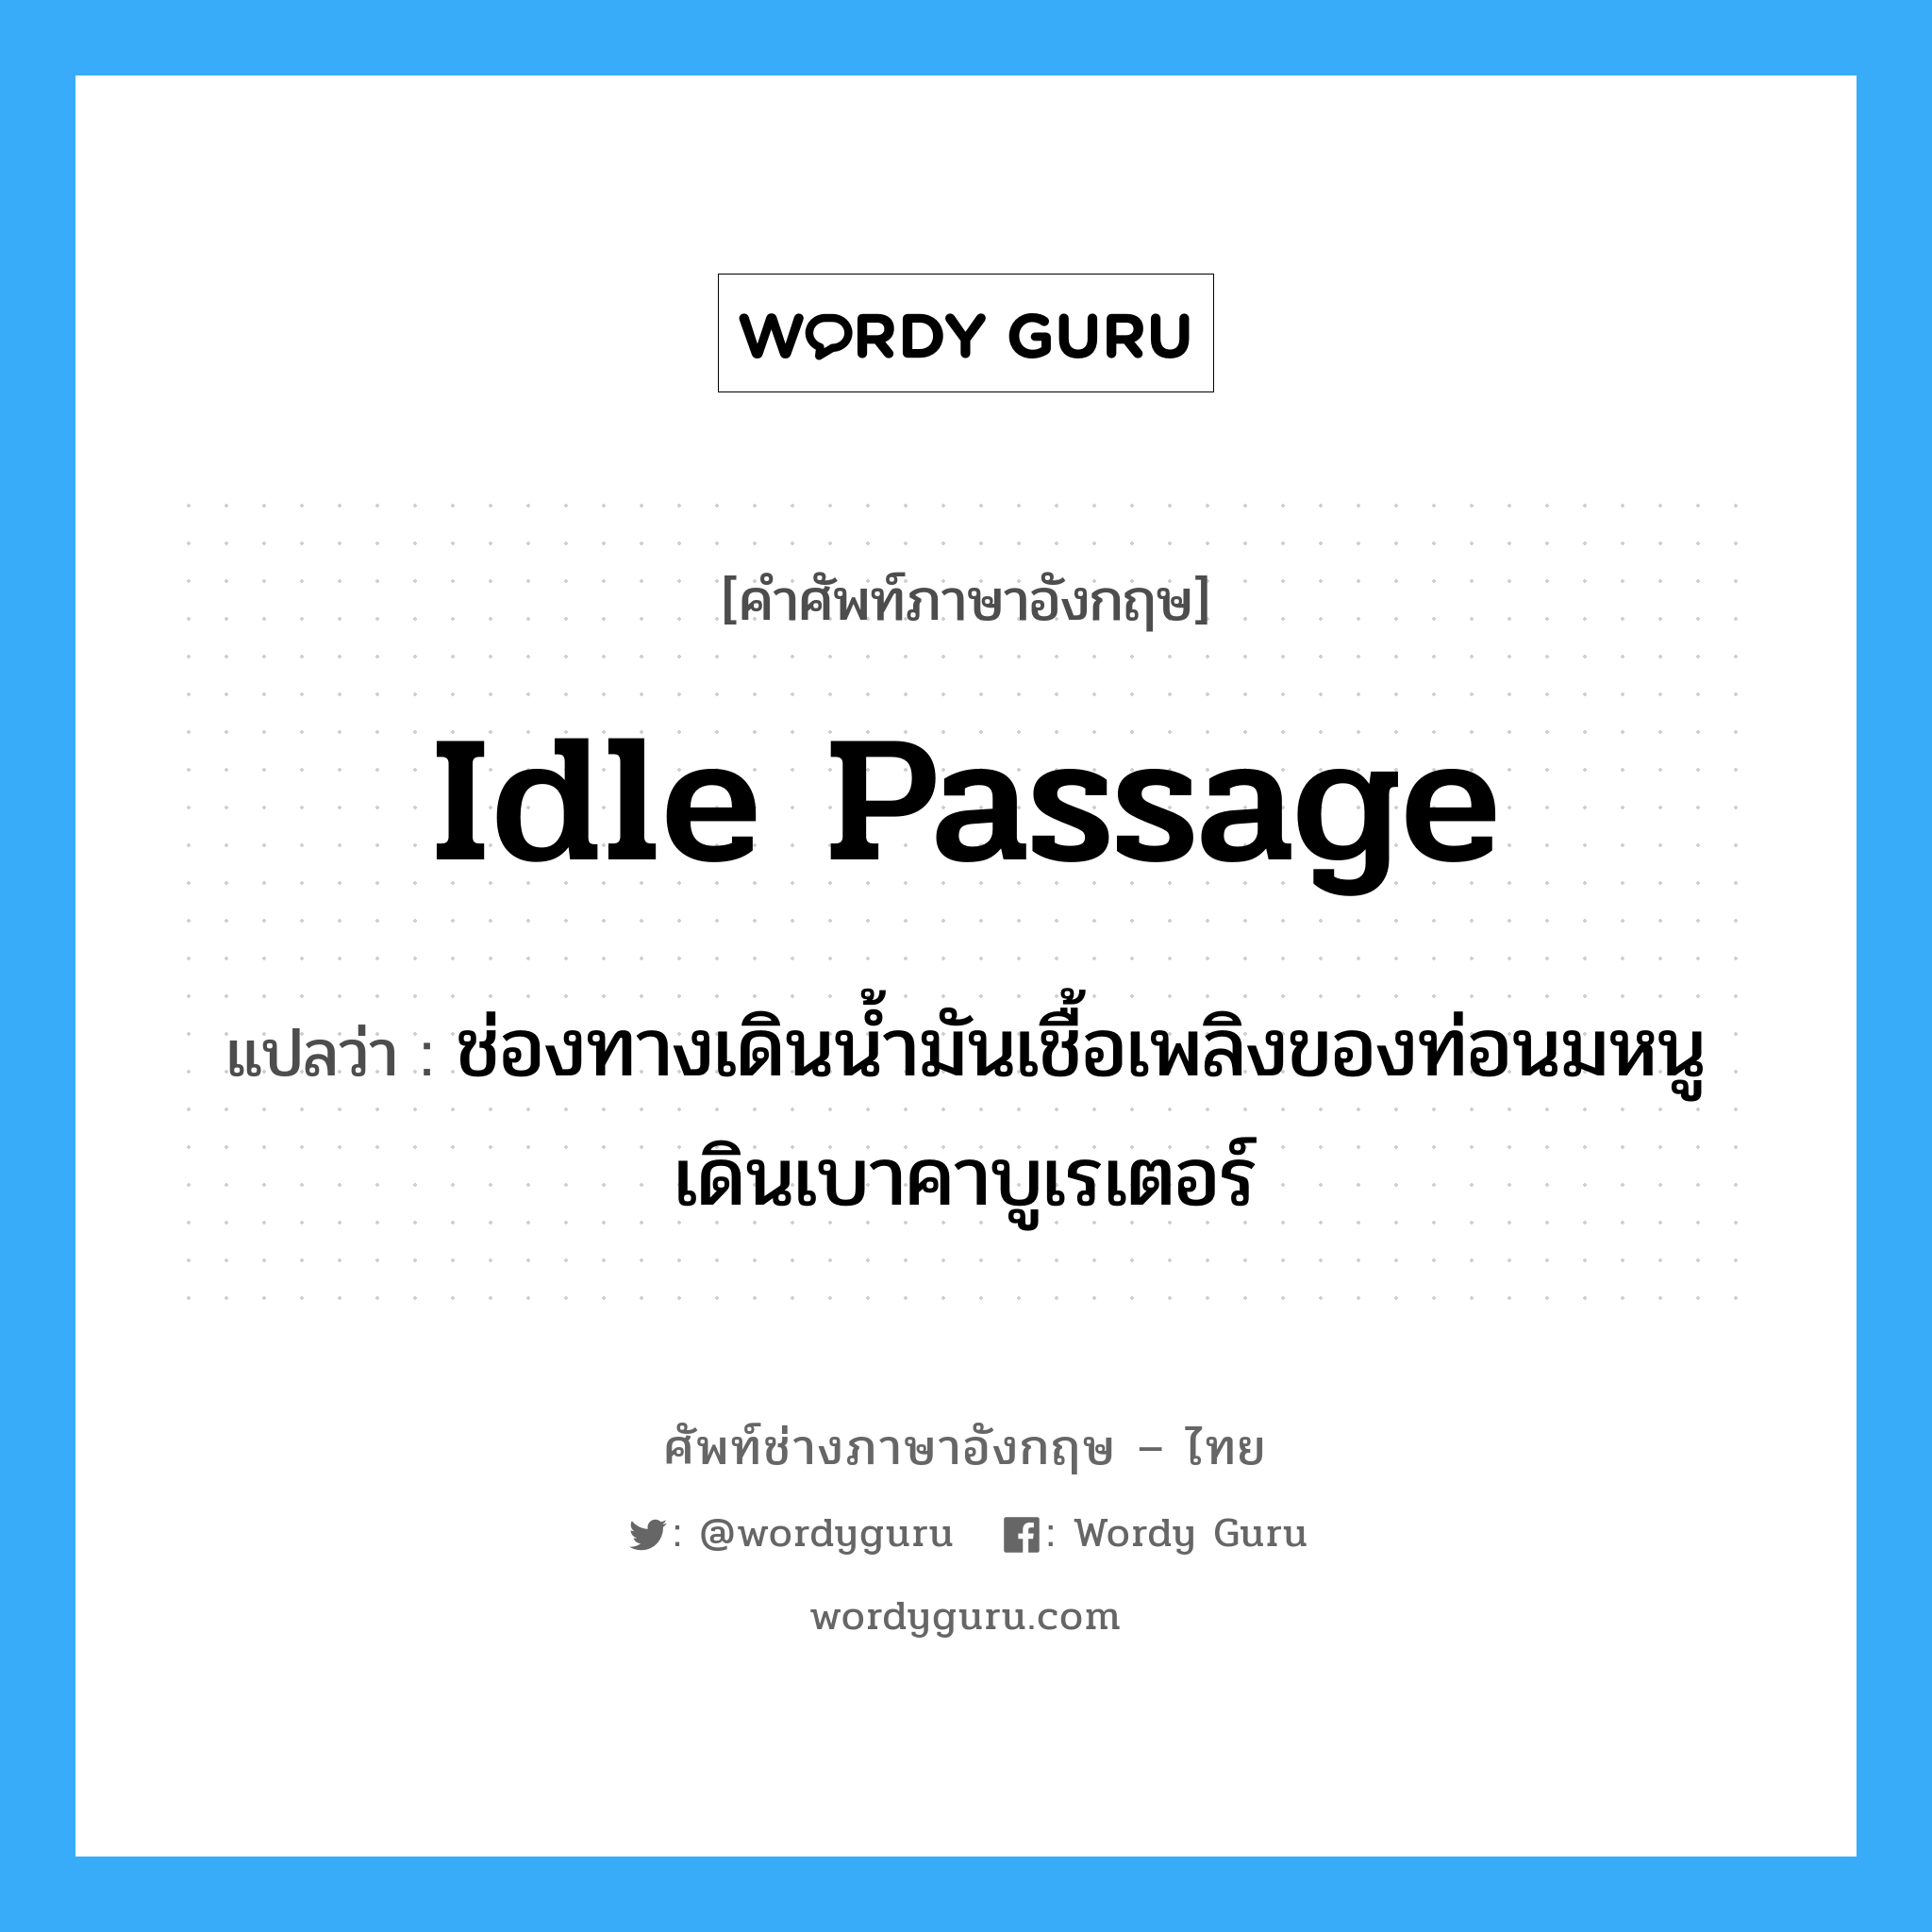 idle passage แปลว่า?, คำศัพท์ช่างภาษาอังกฤษ - ไทย idle passage คำศัพท์ภาษาอังกฤษ idle passage แปลว่า ช่องทางเดินน้ำมันเชื้อเพลิงของท่อนมหนูเดินเบาคาบูเรเตอร์